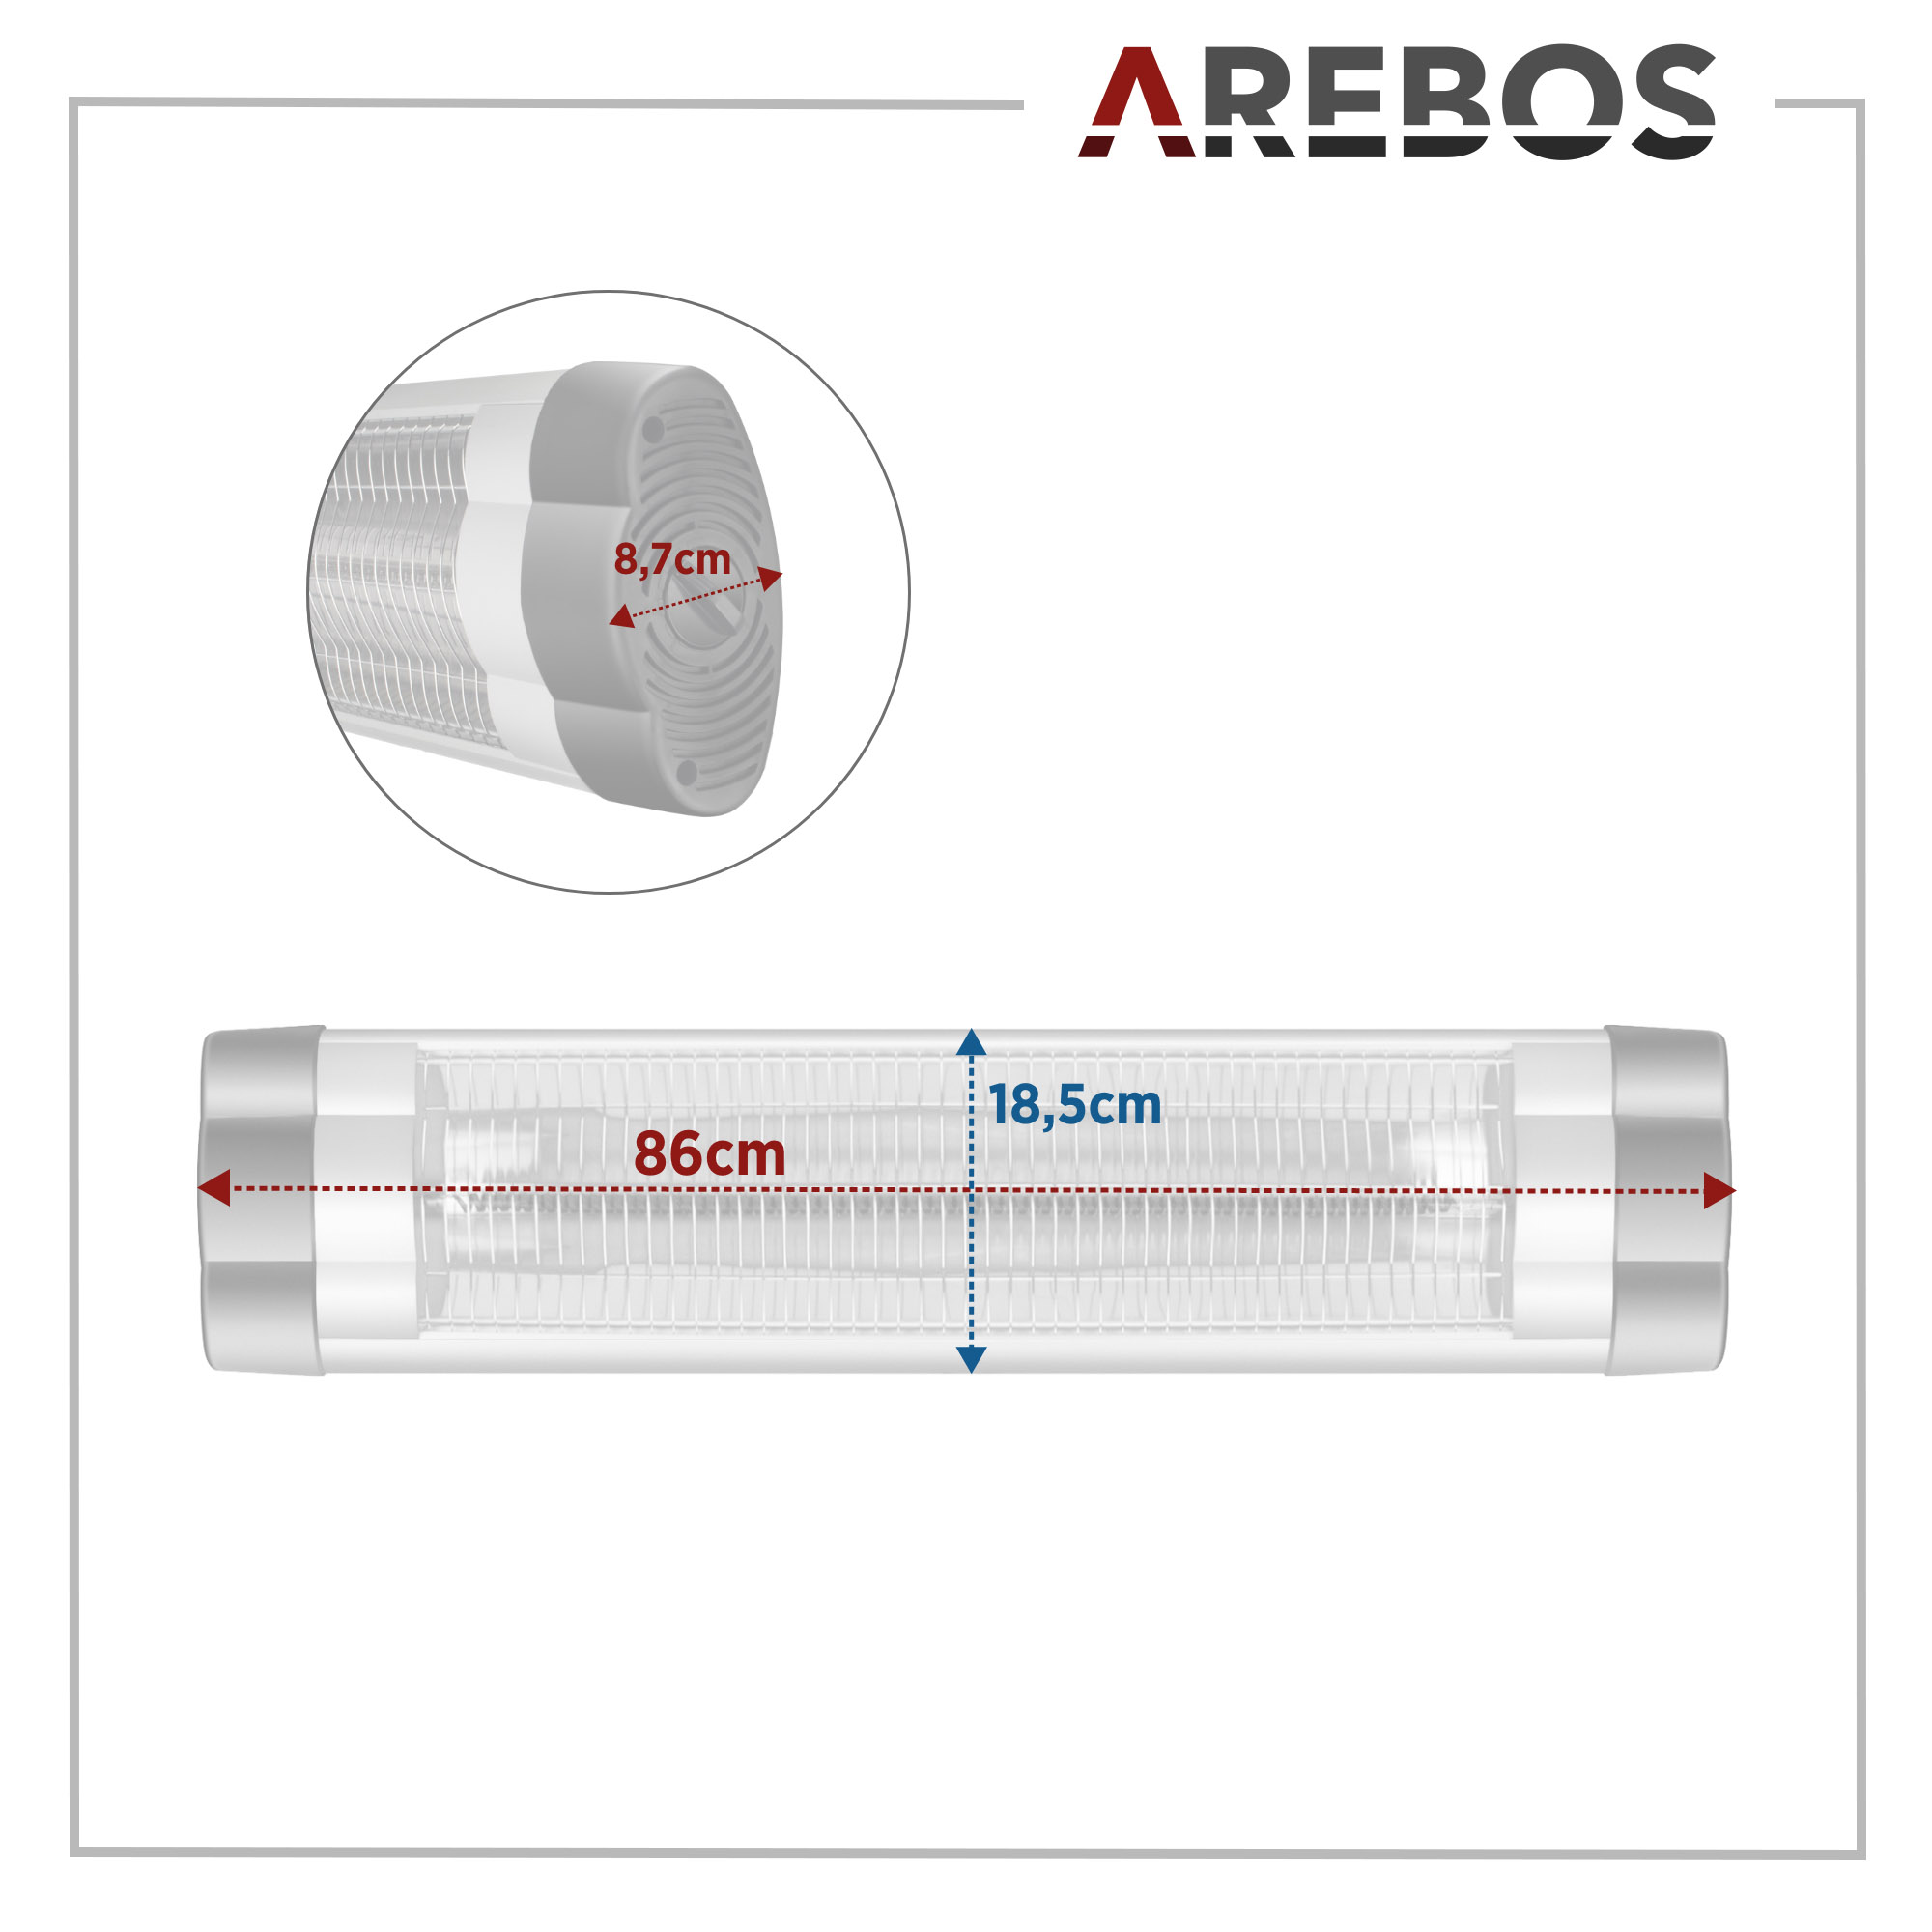 AREBOS | Stufenlos Montagematerial Infrarot | regulierbar inkl. Heizstrahler, Silber